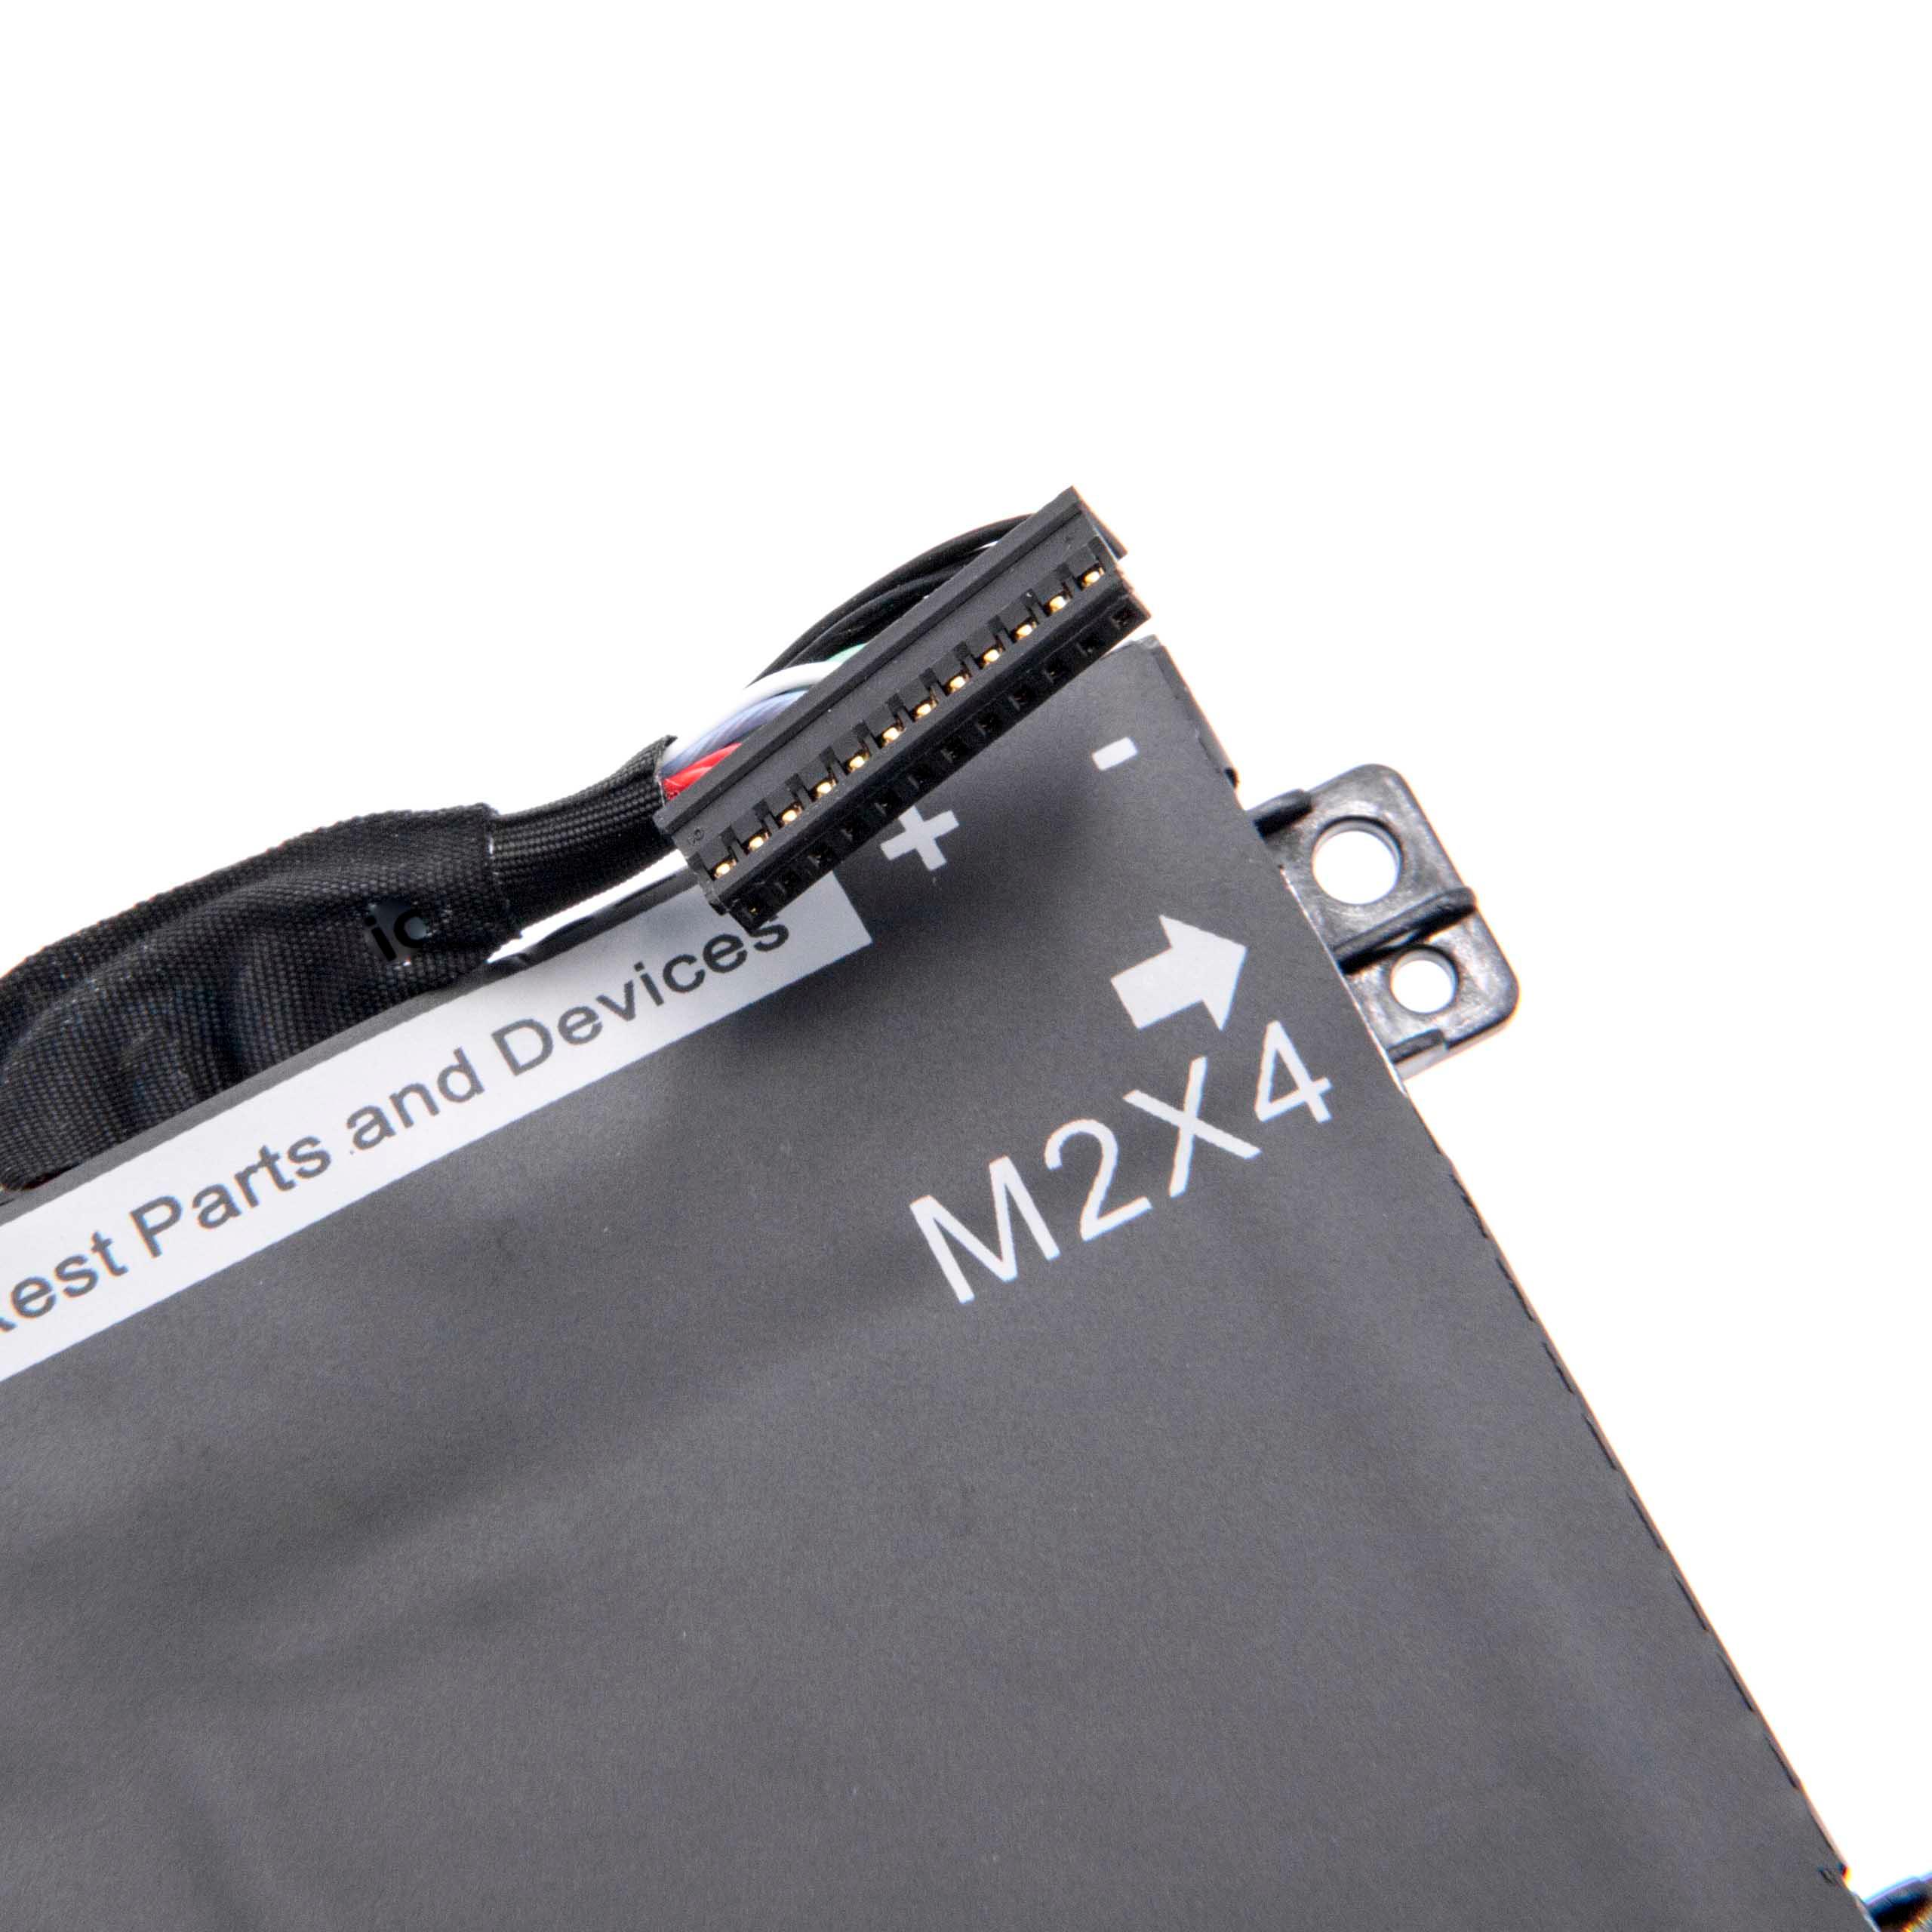 Batterie remplace Dell 01P6KD, 1P6KD, 4GVGH, 062MJV pour ordinateur portable - 7300mAh 11,4V Li-ion, noir